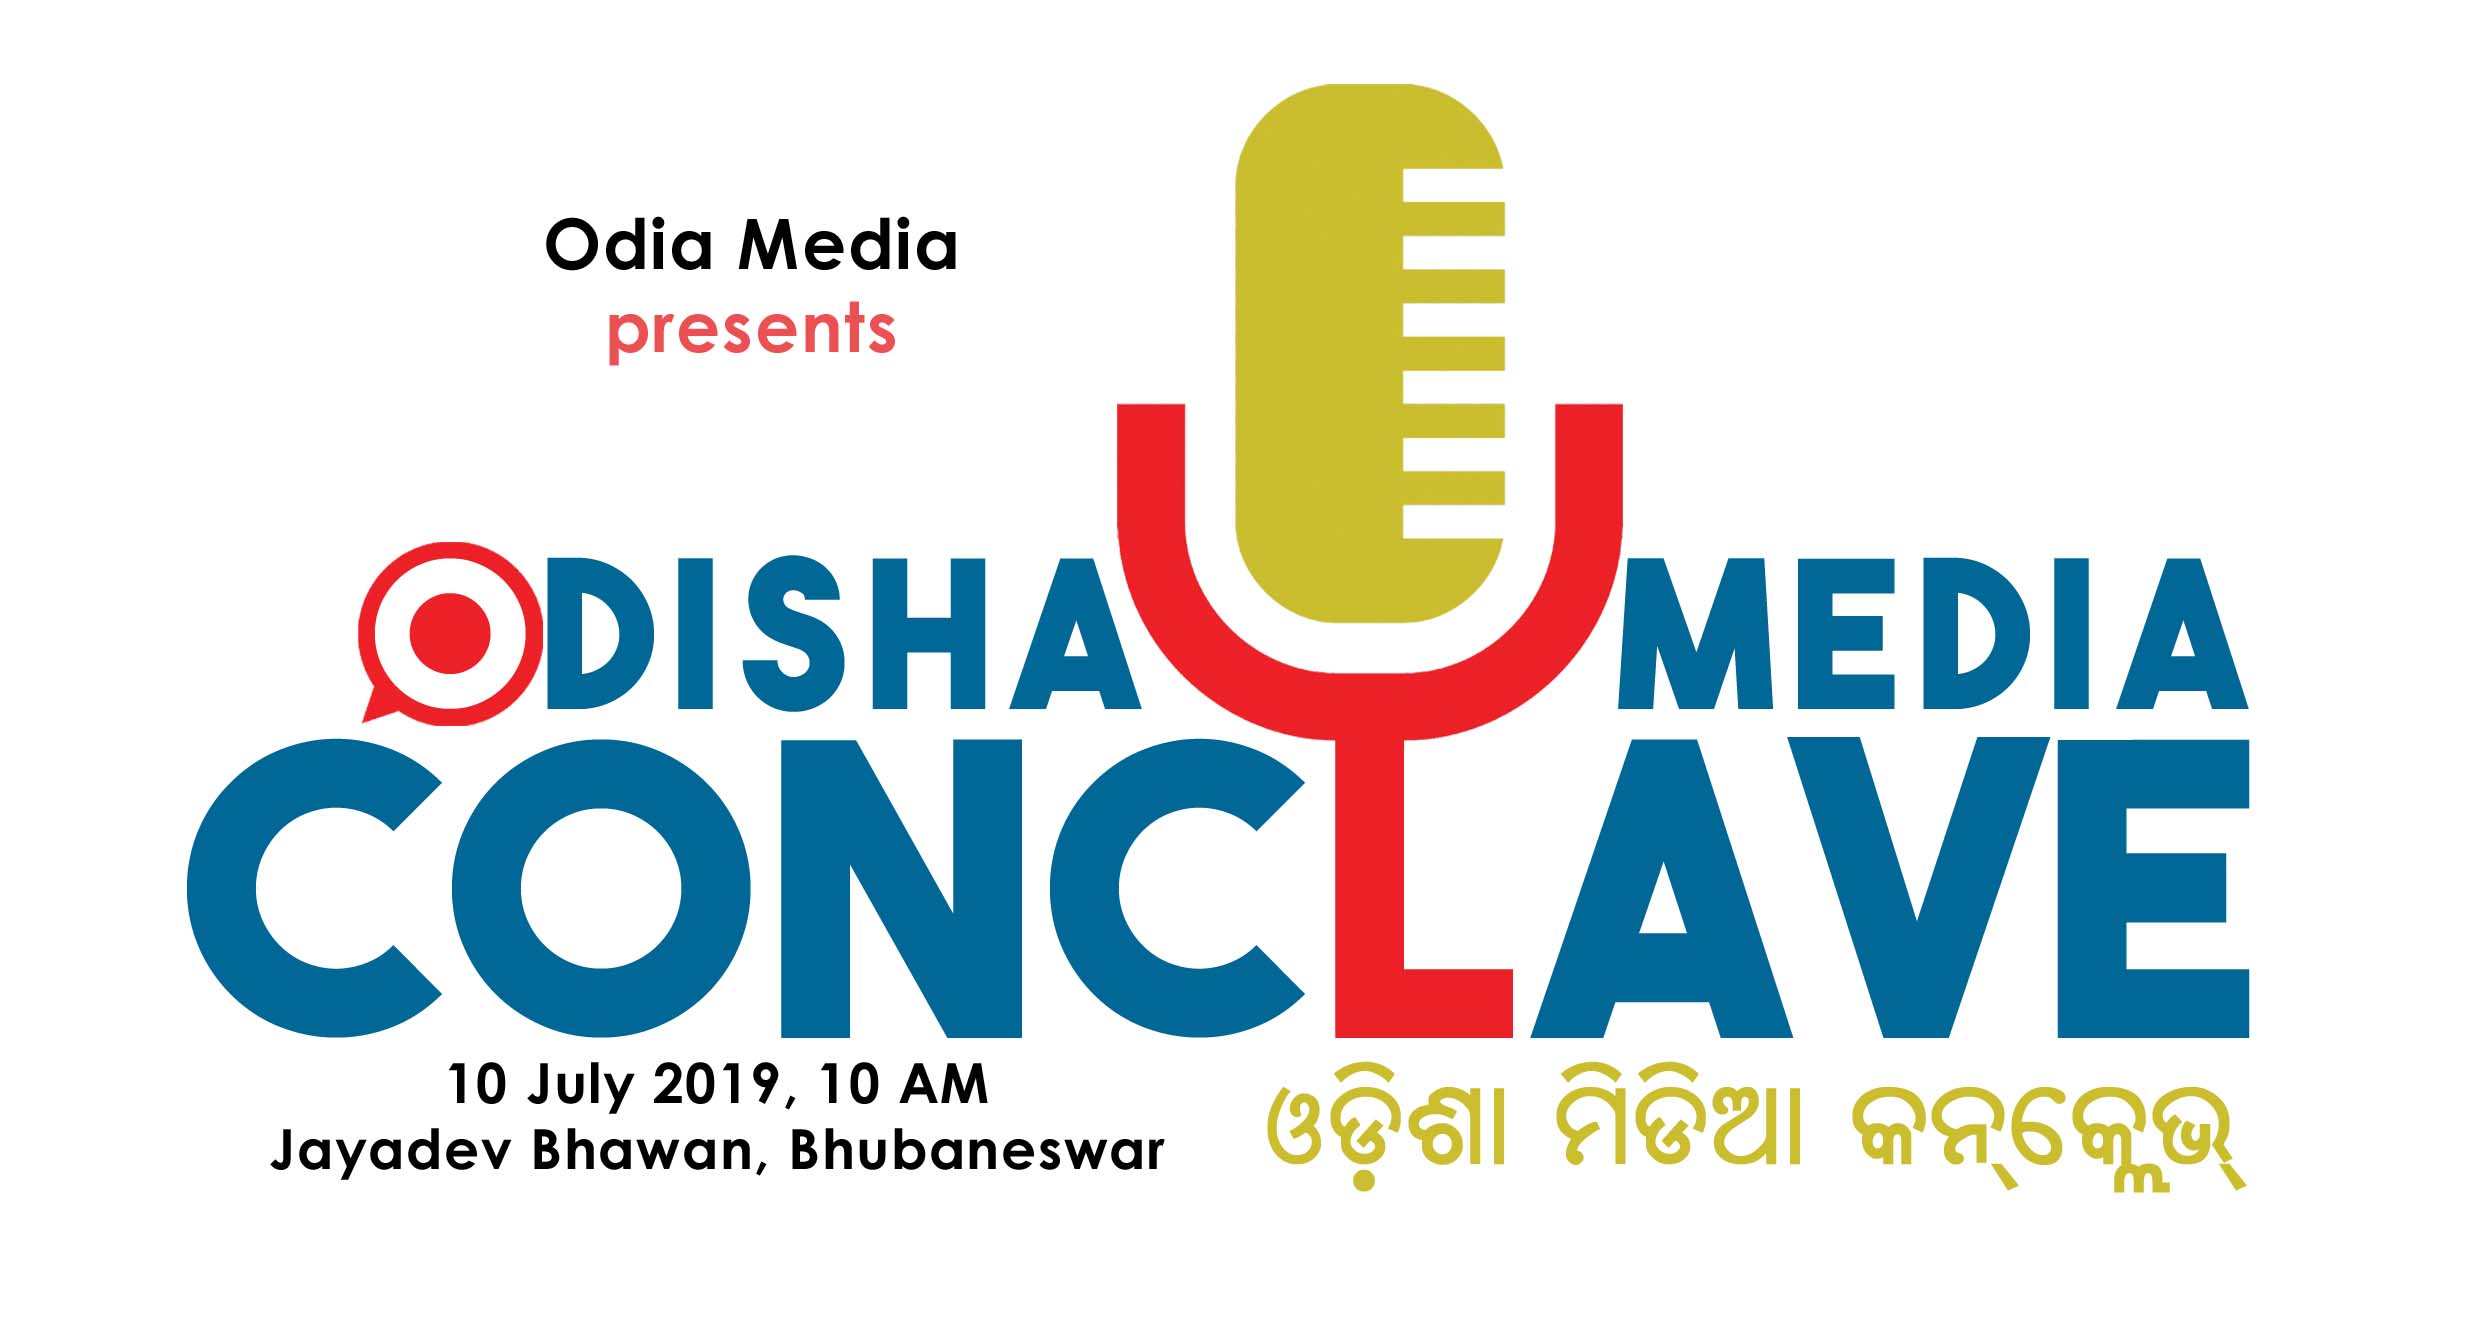 Odisha Media Conclave 2019